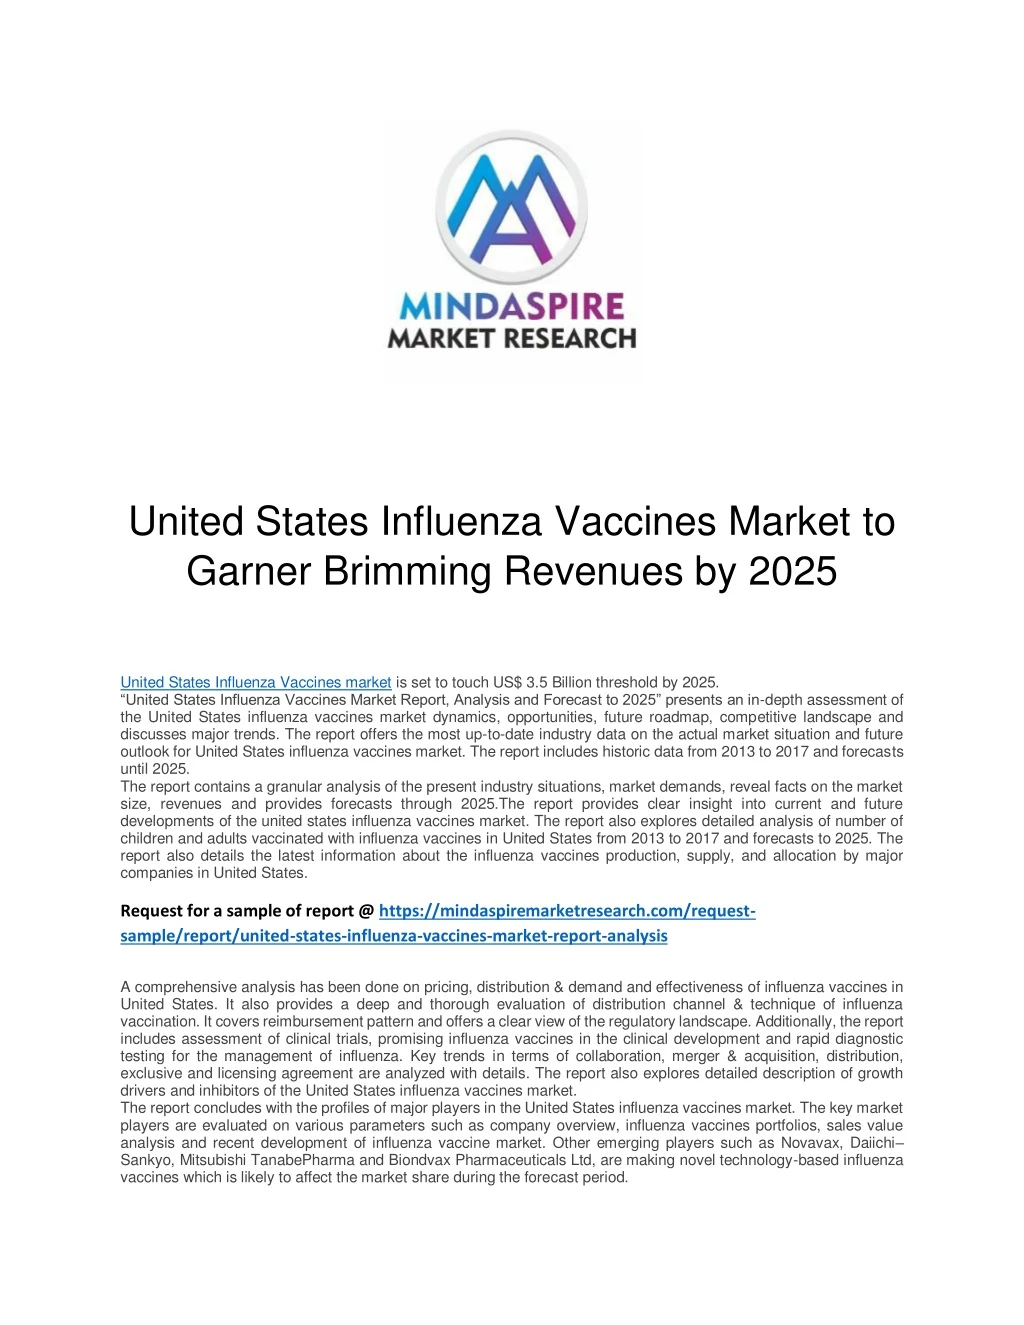 united states influenza vaccines market to garner